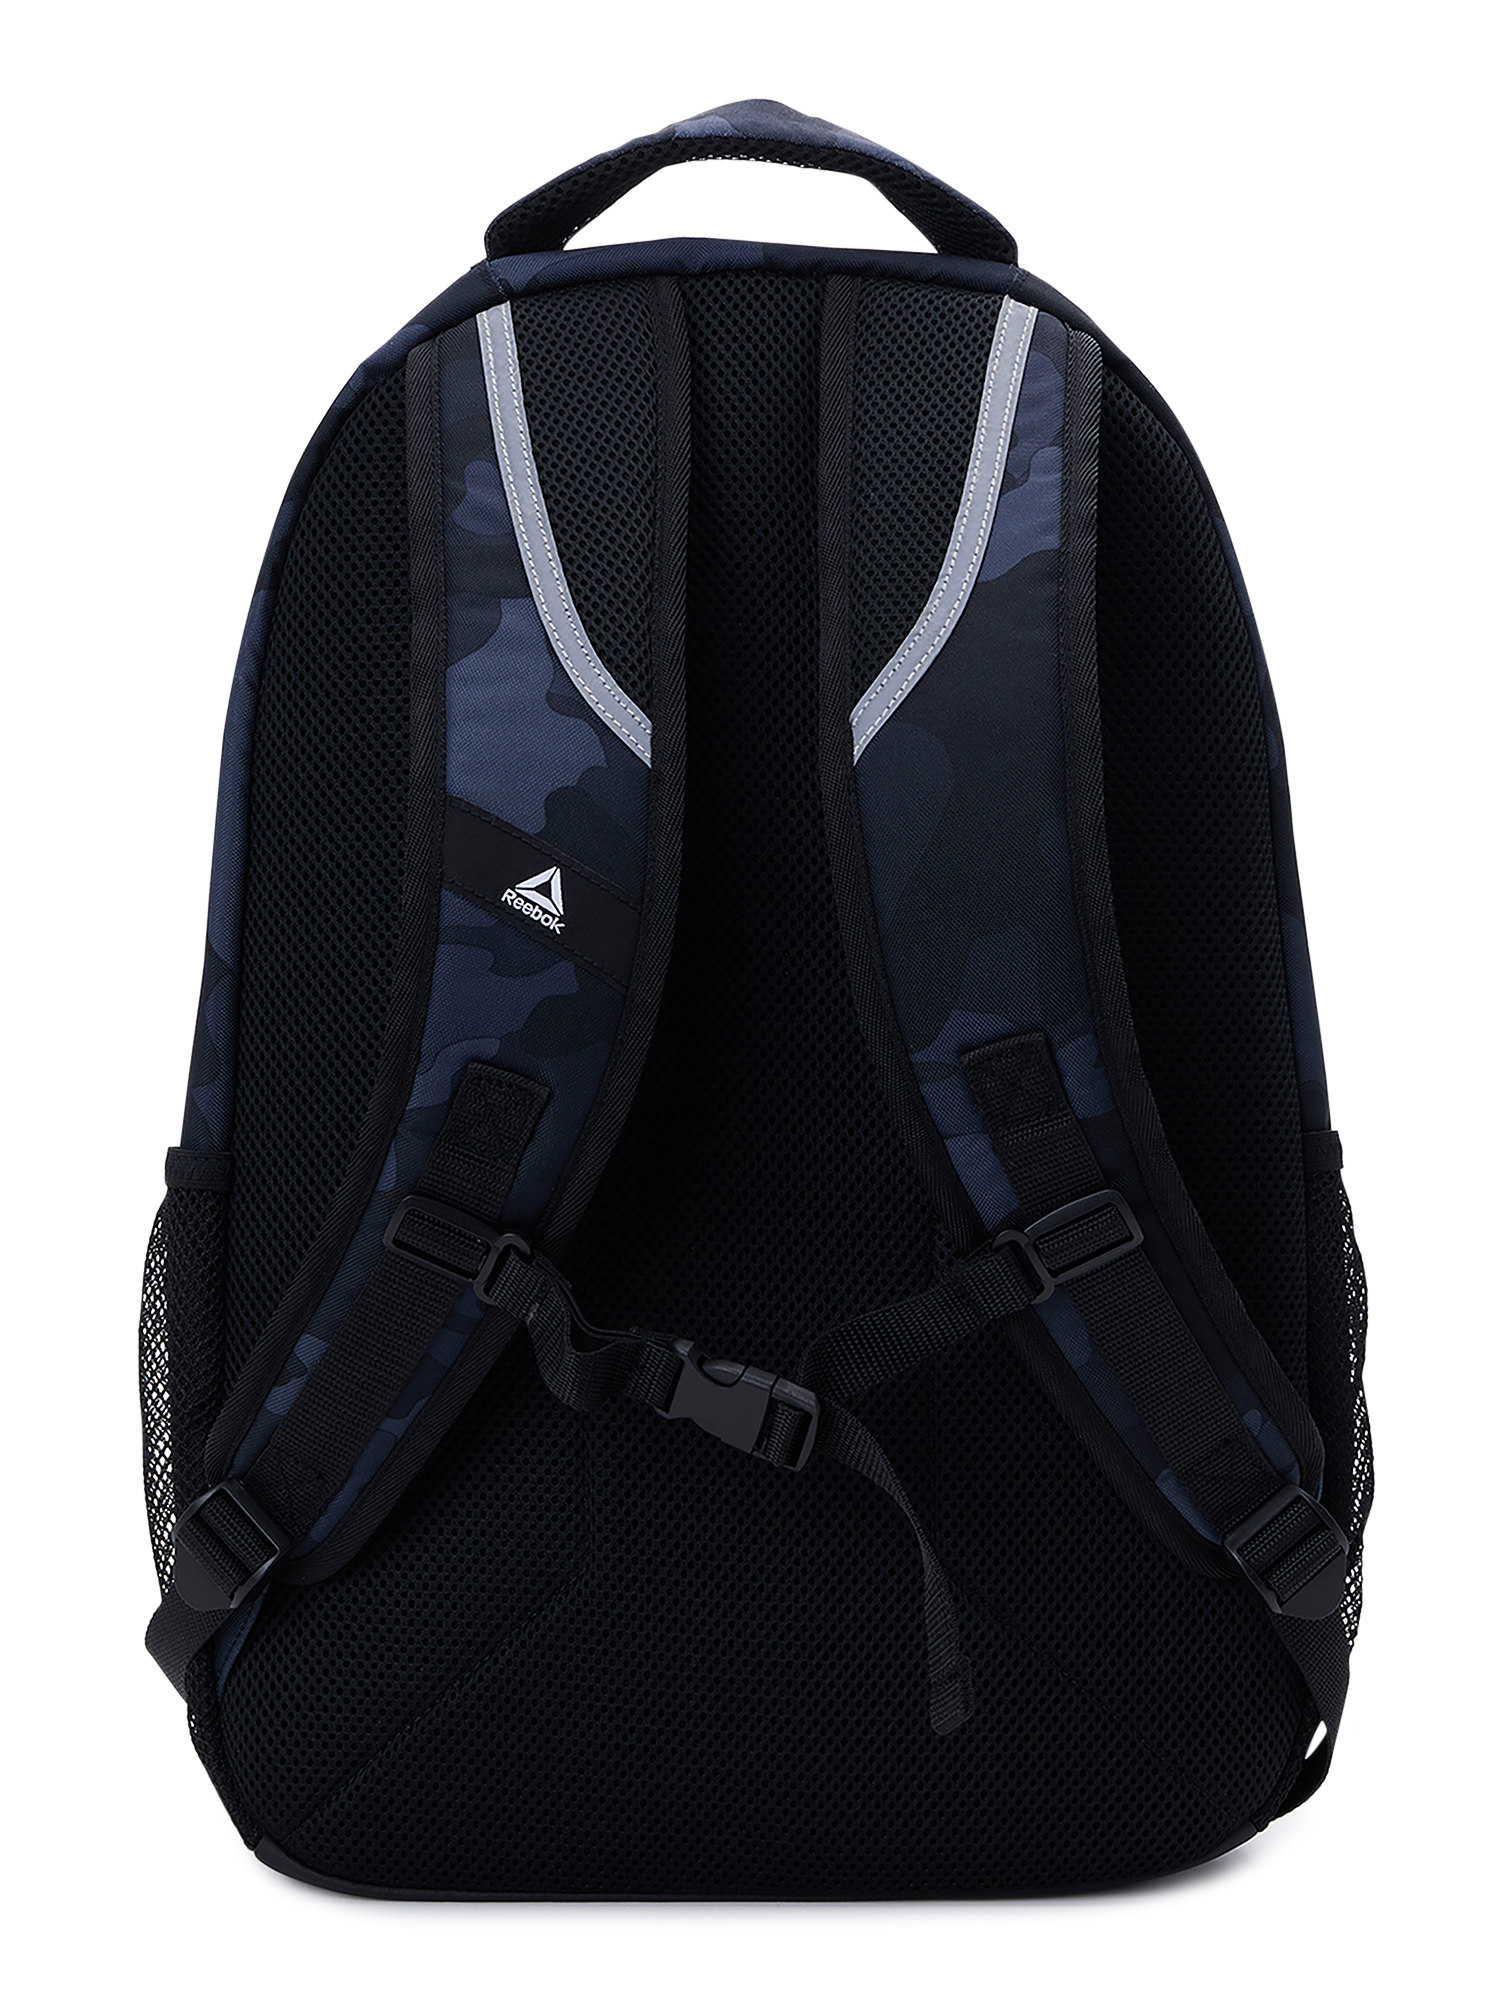 Reebok Unisex Adult Laredo 19.5" Laptop Backpack, Black Camo - image 4 of 5